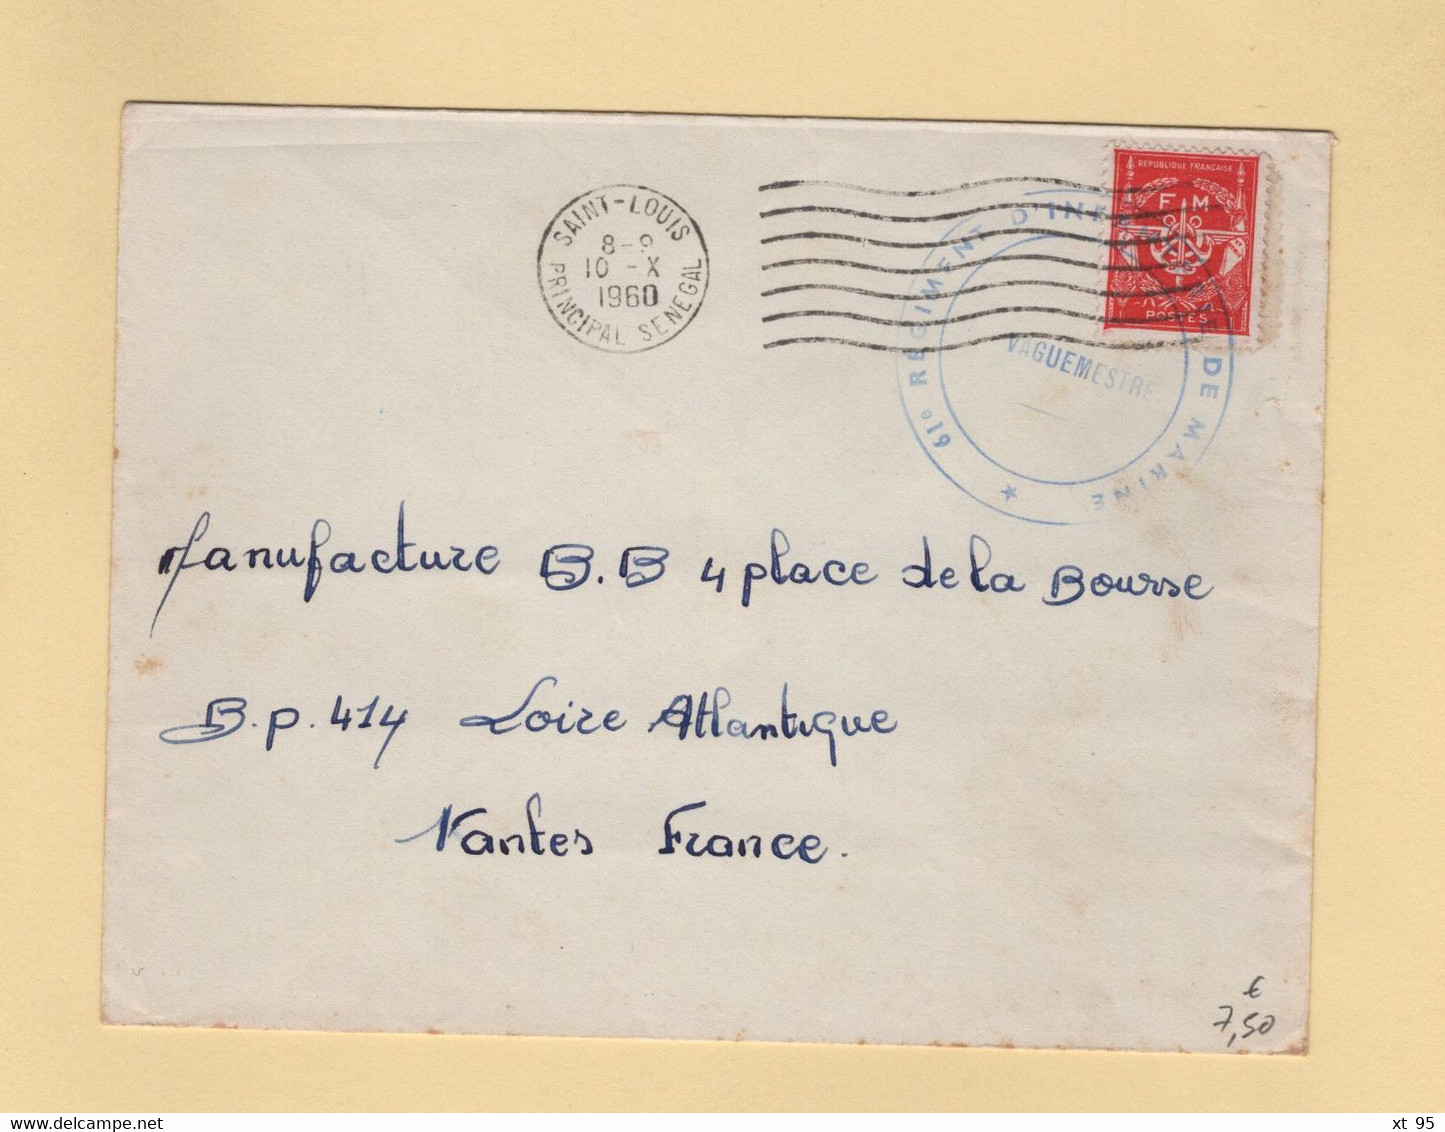 Timbre FM - Saint Louis - Senegal - 1960 - 61e Regiment D Infanterie De Marine - Militärische Franchisemarken